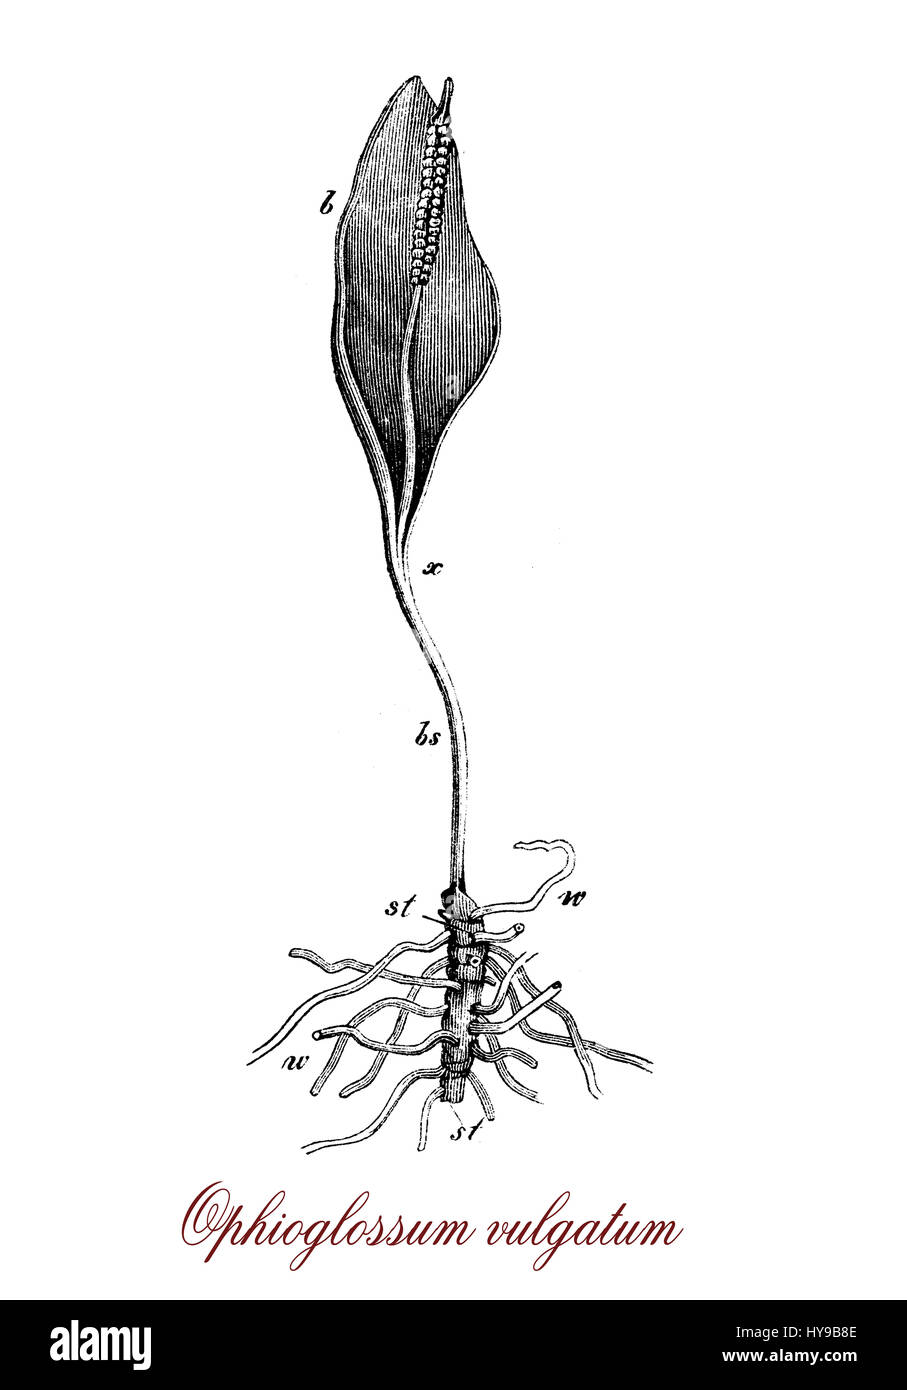 Vintage incisione di ophioglossum vulgatum o sommatori-linguetta fern, felce con un serpente a forma di linguetta e radici carnose molto adattabile a vari tipi di terreni Foto Stock